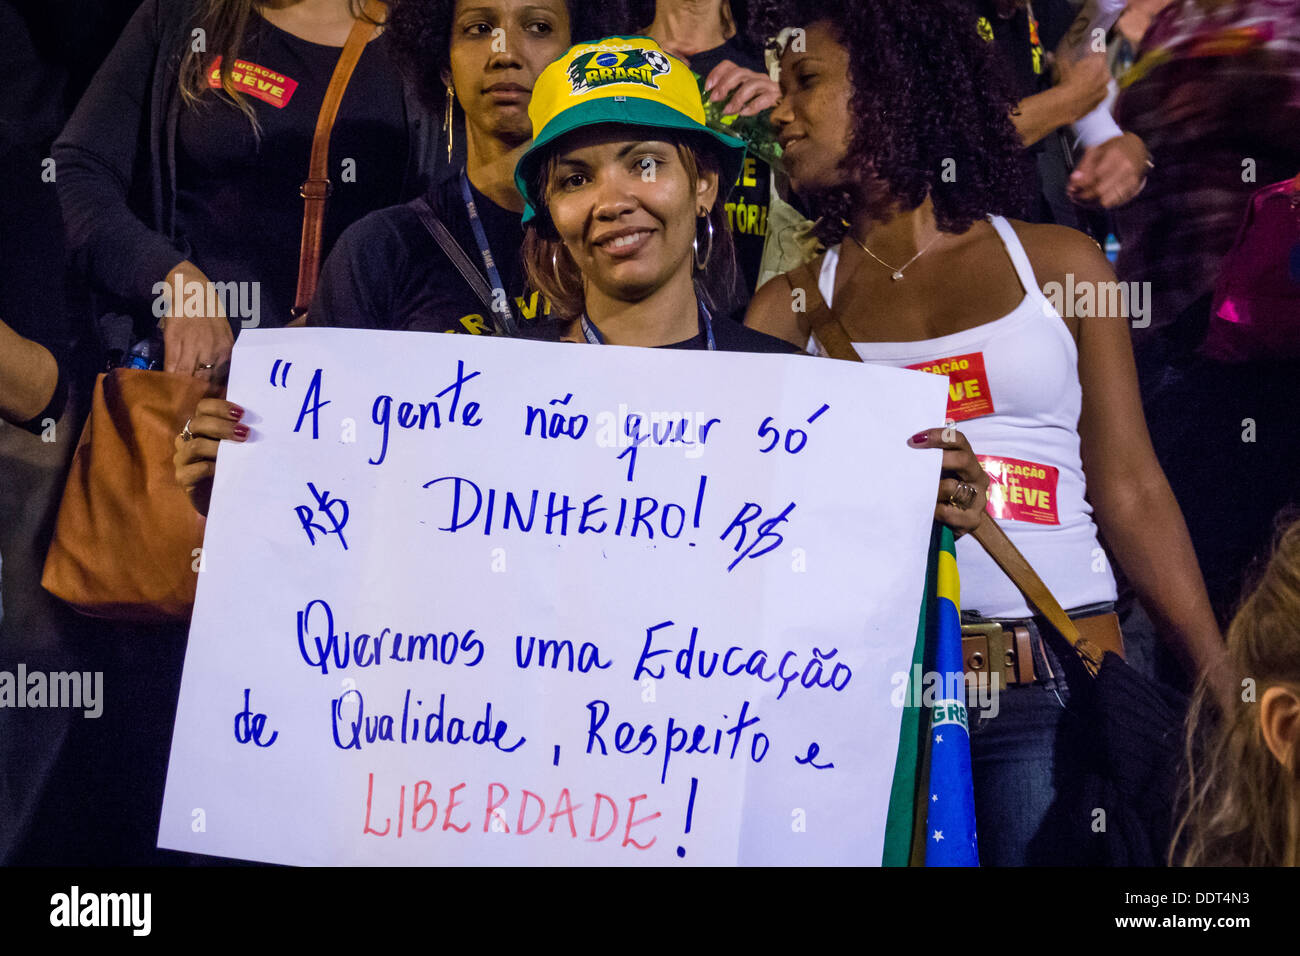 Les enseignants des écoles municipales de Rio de Janeiro, voter pour la poursuite de la grève dans l'Assemblée (28 août 2013) Banque D'Images